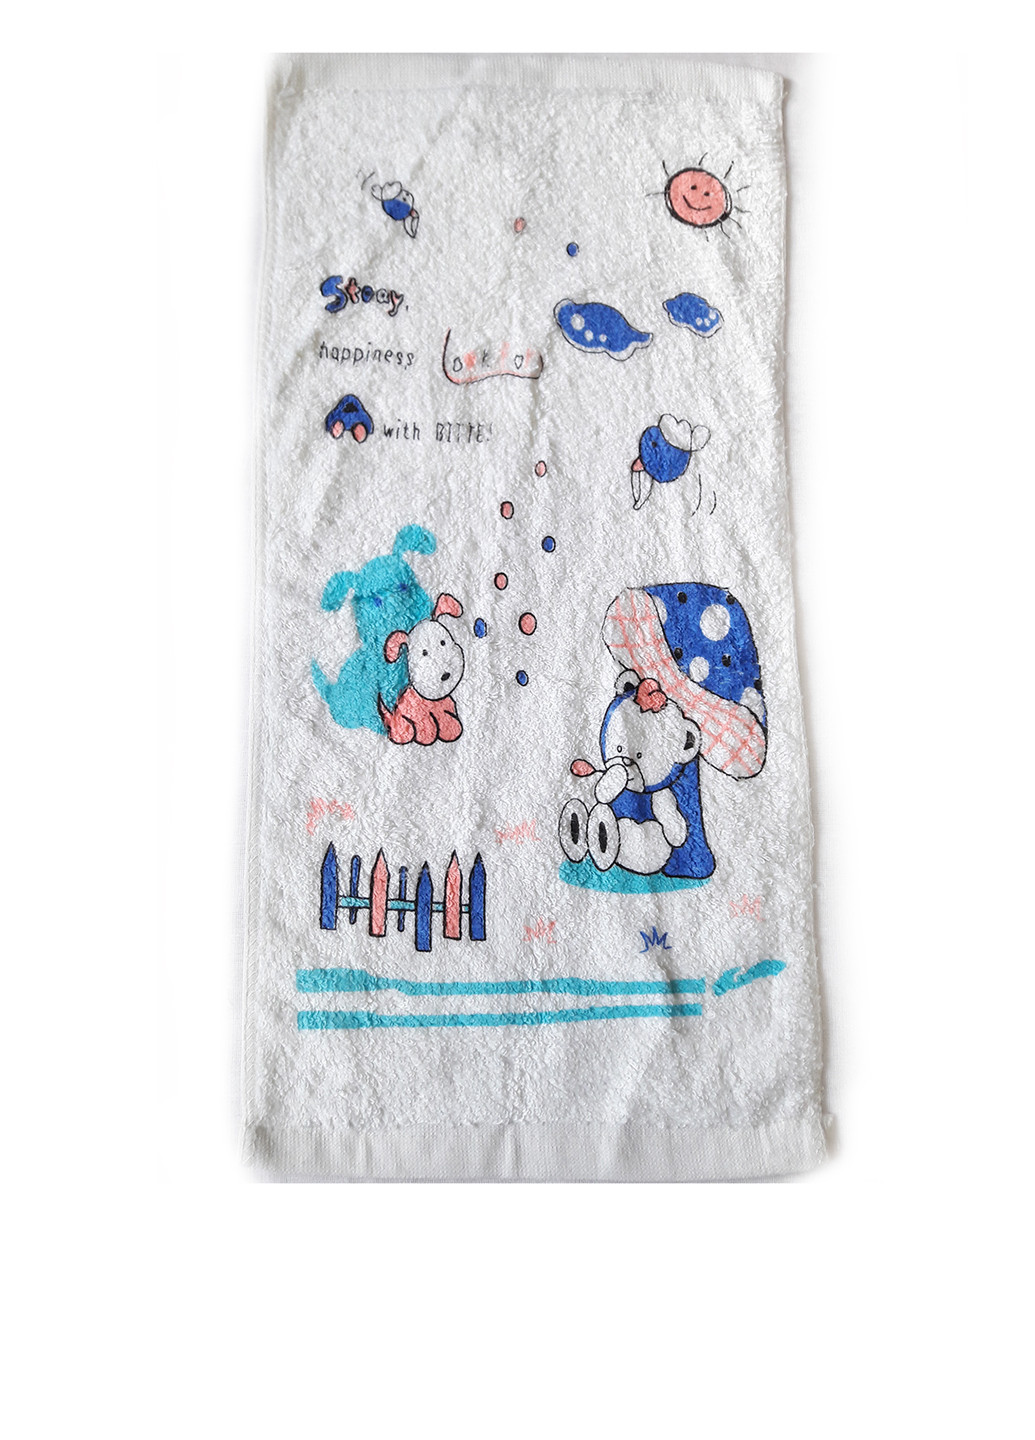 La Sana полотенце, 26*52 см рисунок голубой производство - Китай